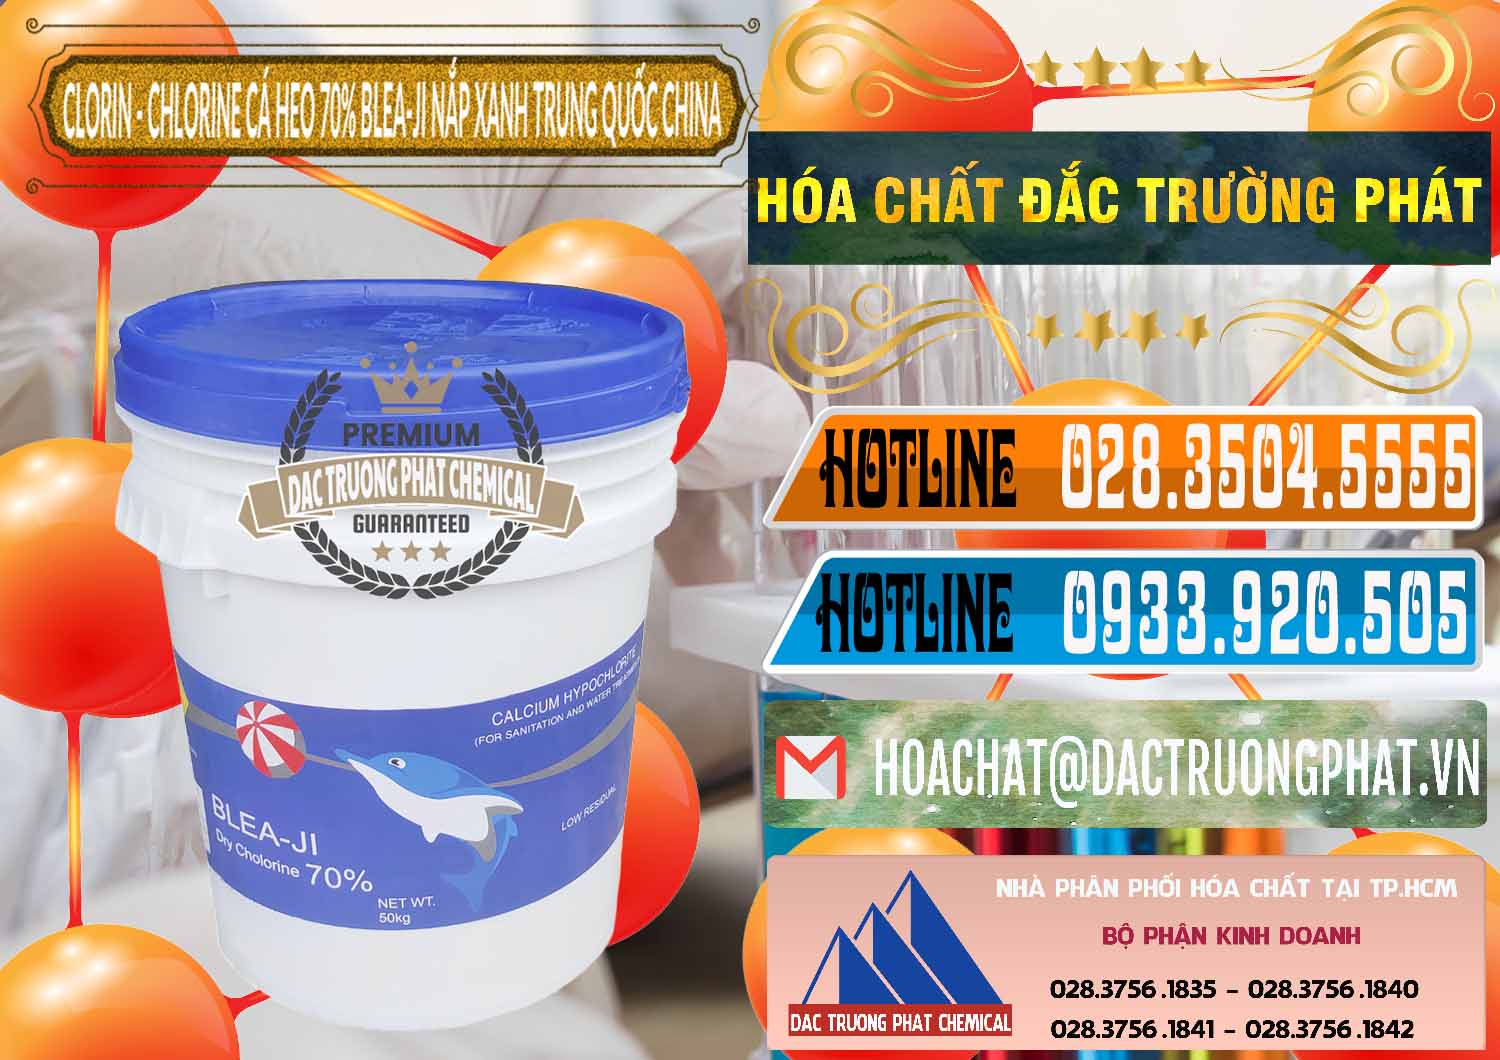 Chuyên bán - cung cấp Clorin - Chlorine Cá Heo 70% Cá Heo Blea-Ji Thùng Tròn Nắp Xanh Trung Quốc China - 0208 - Nhà cung ứng _ phân phối hóa chất tại TP.HCM - stmp.net